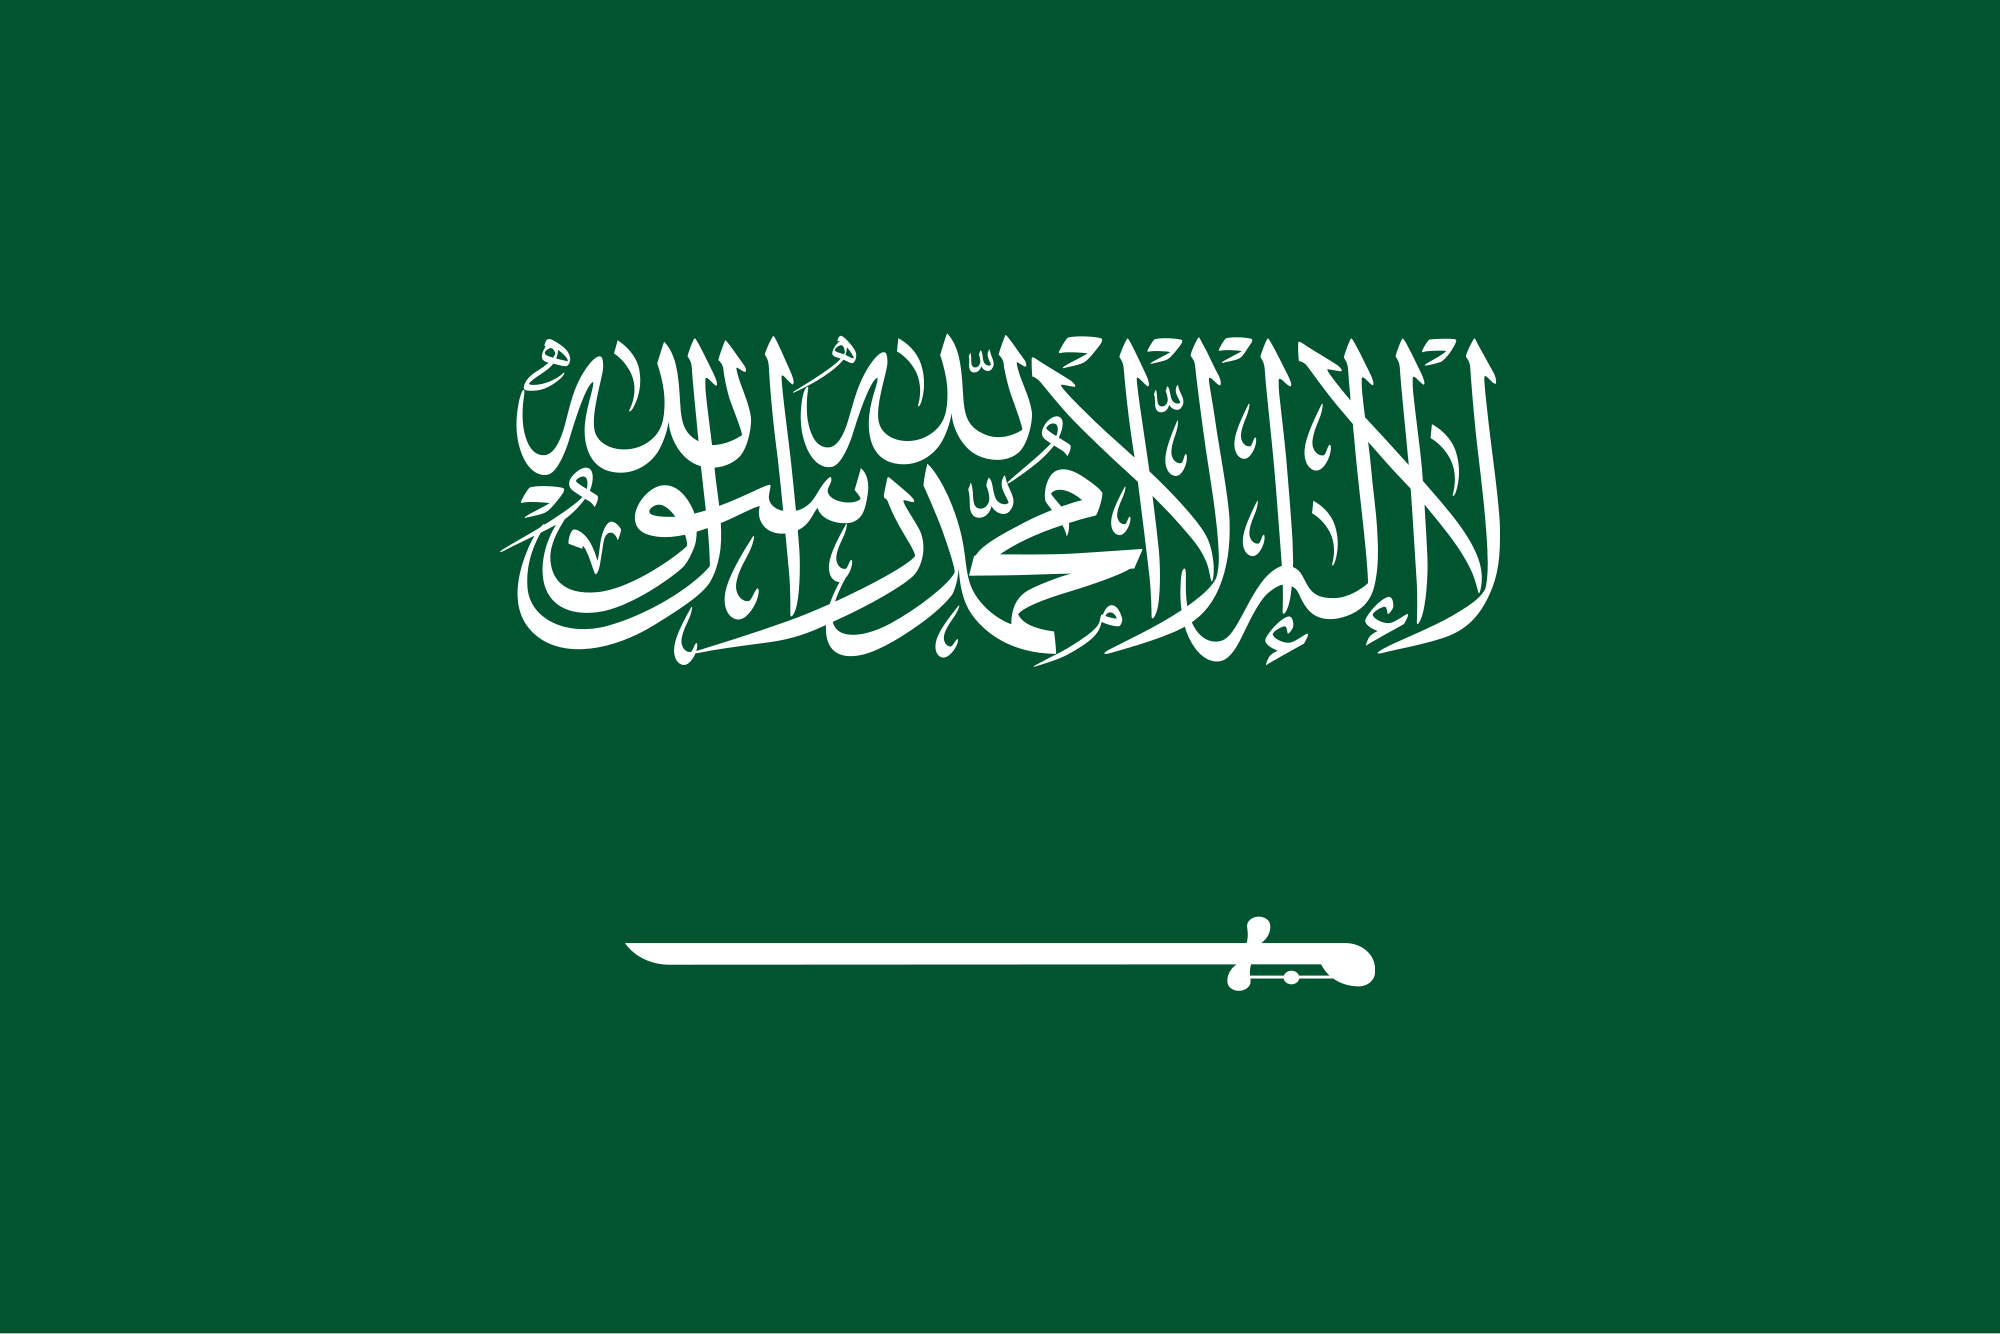 Das Glaubensbekenntnis ist der Schriftzug auf der Flagge von Saudi Arabien dem Staat dessen Territorium Heimat des Propheten Mohammed einschließt